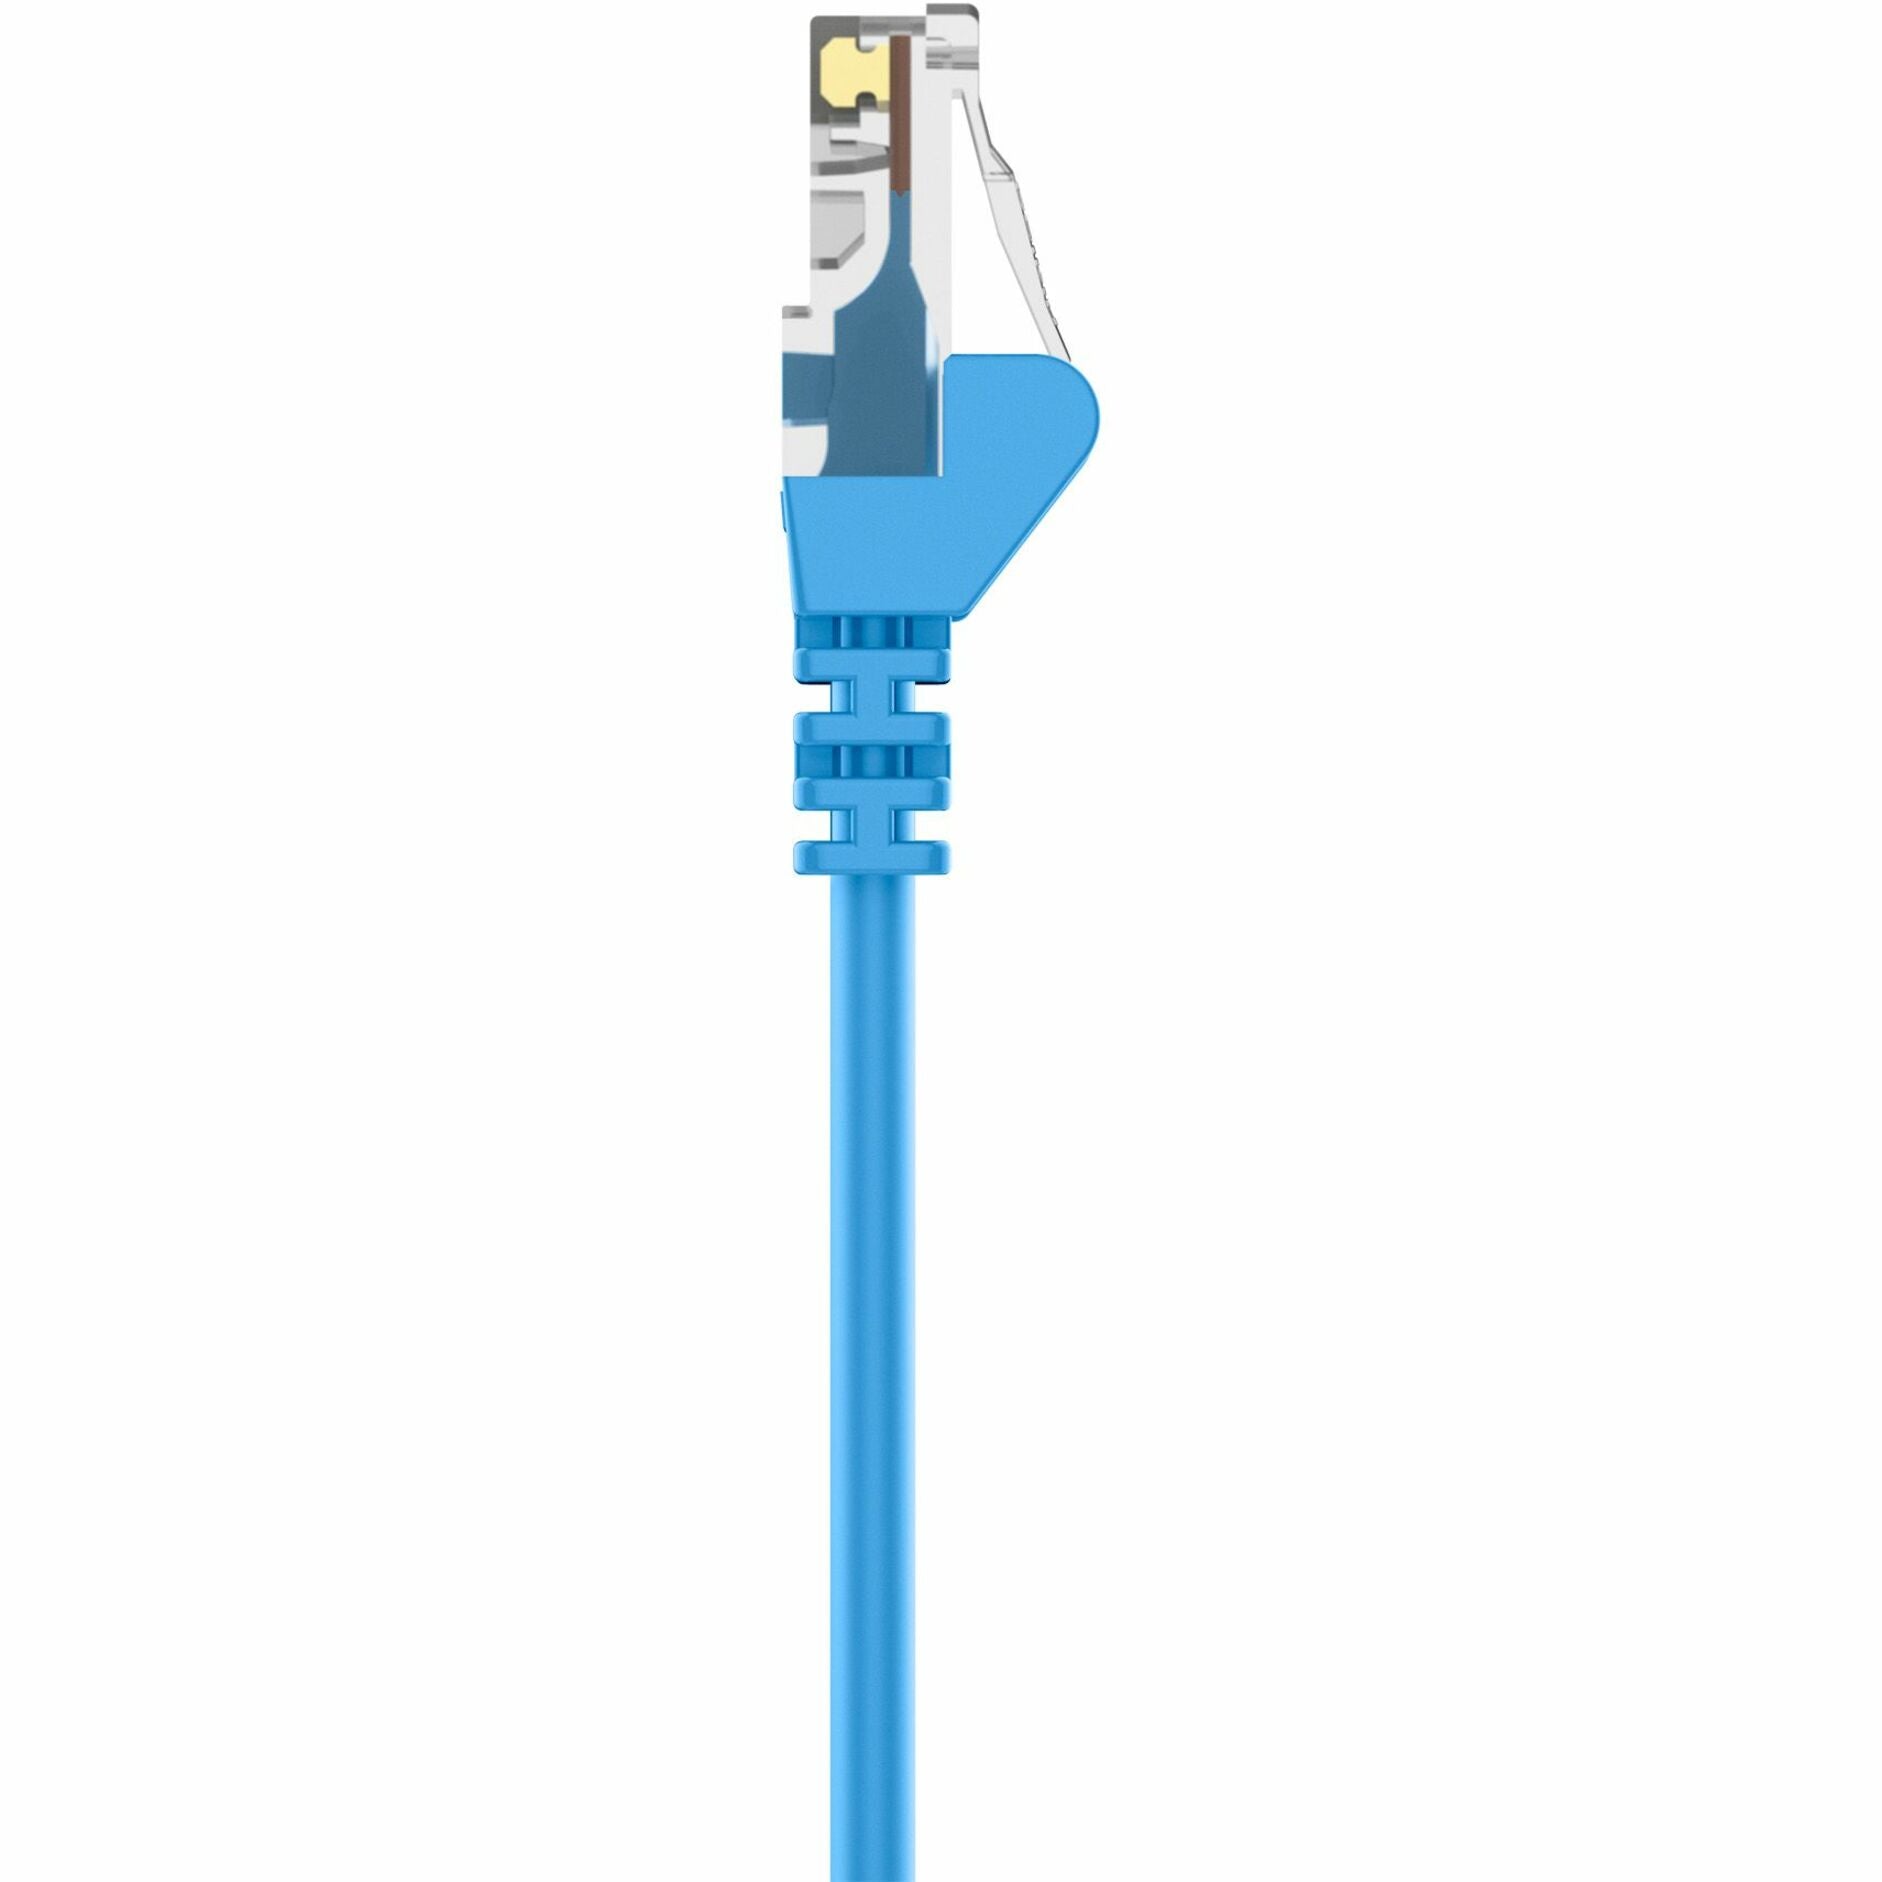 Belkin A3X126-15-BLU-S Cat5e Crossover Cable, 15 ft, Blue, Lifetime Warranty